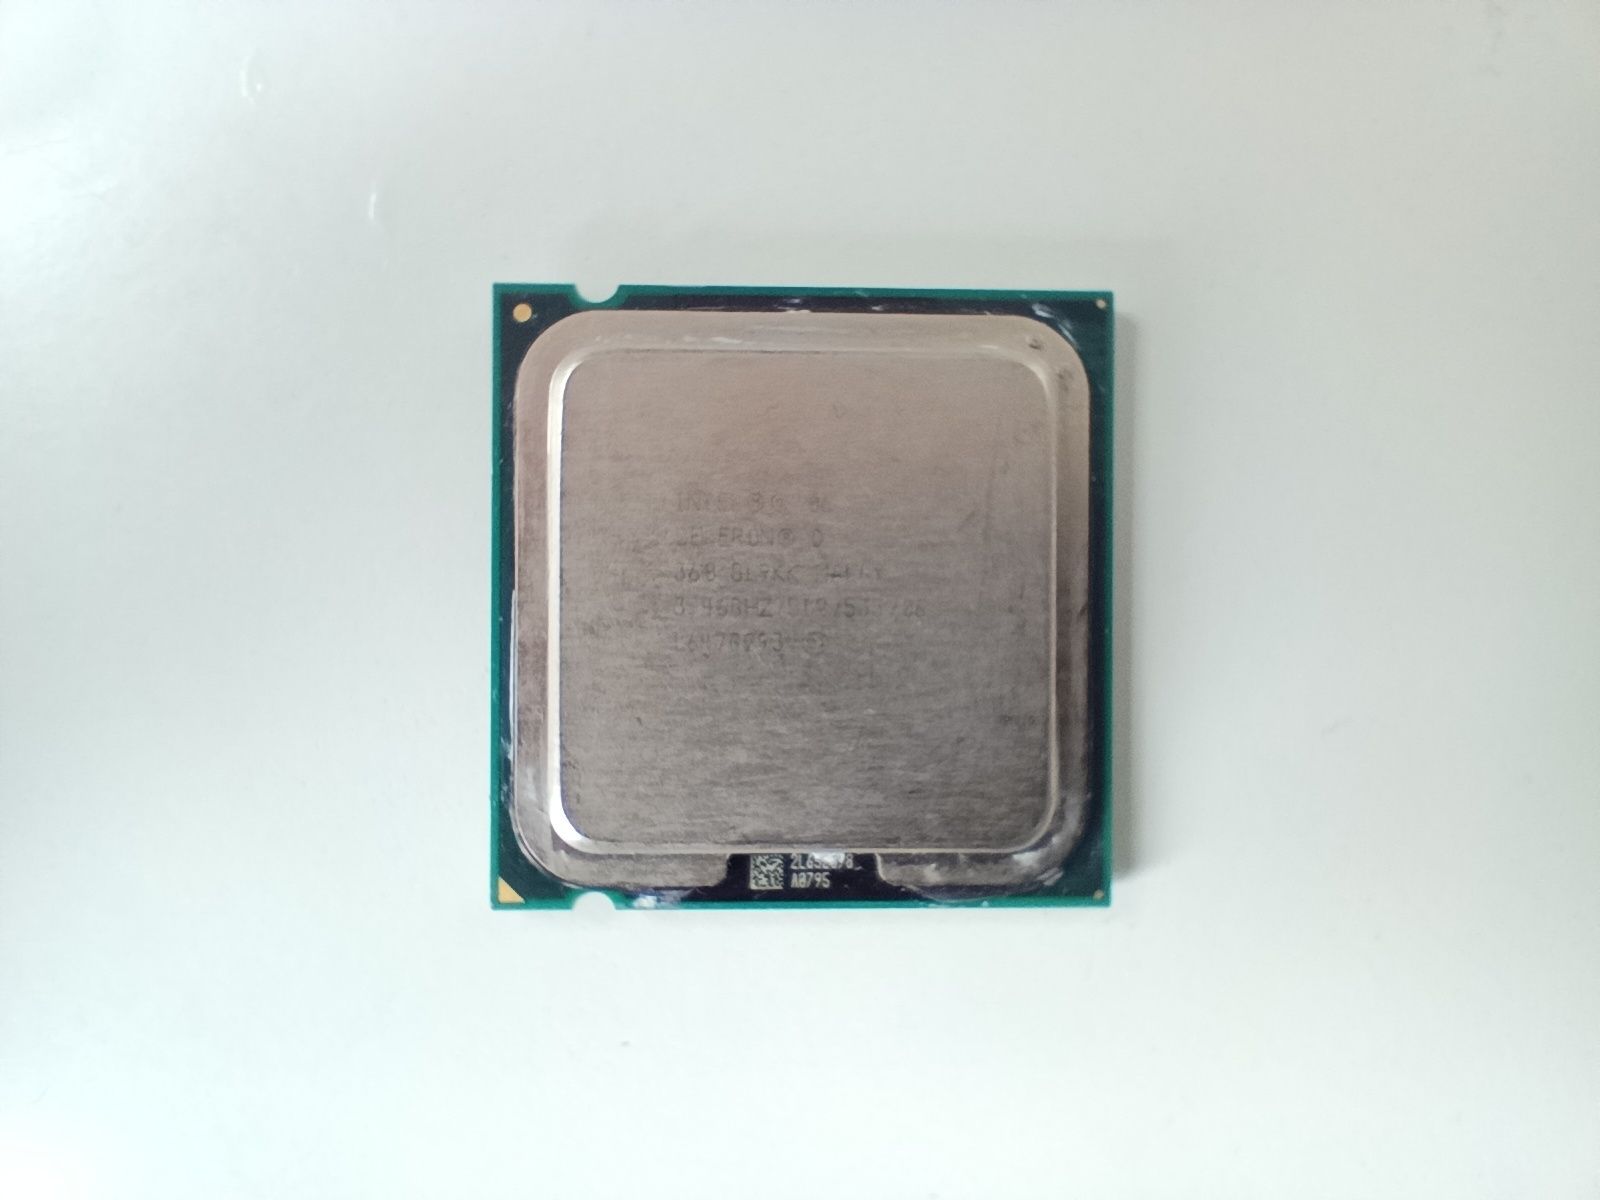 Procesor Intel Celeron D 368